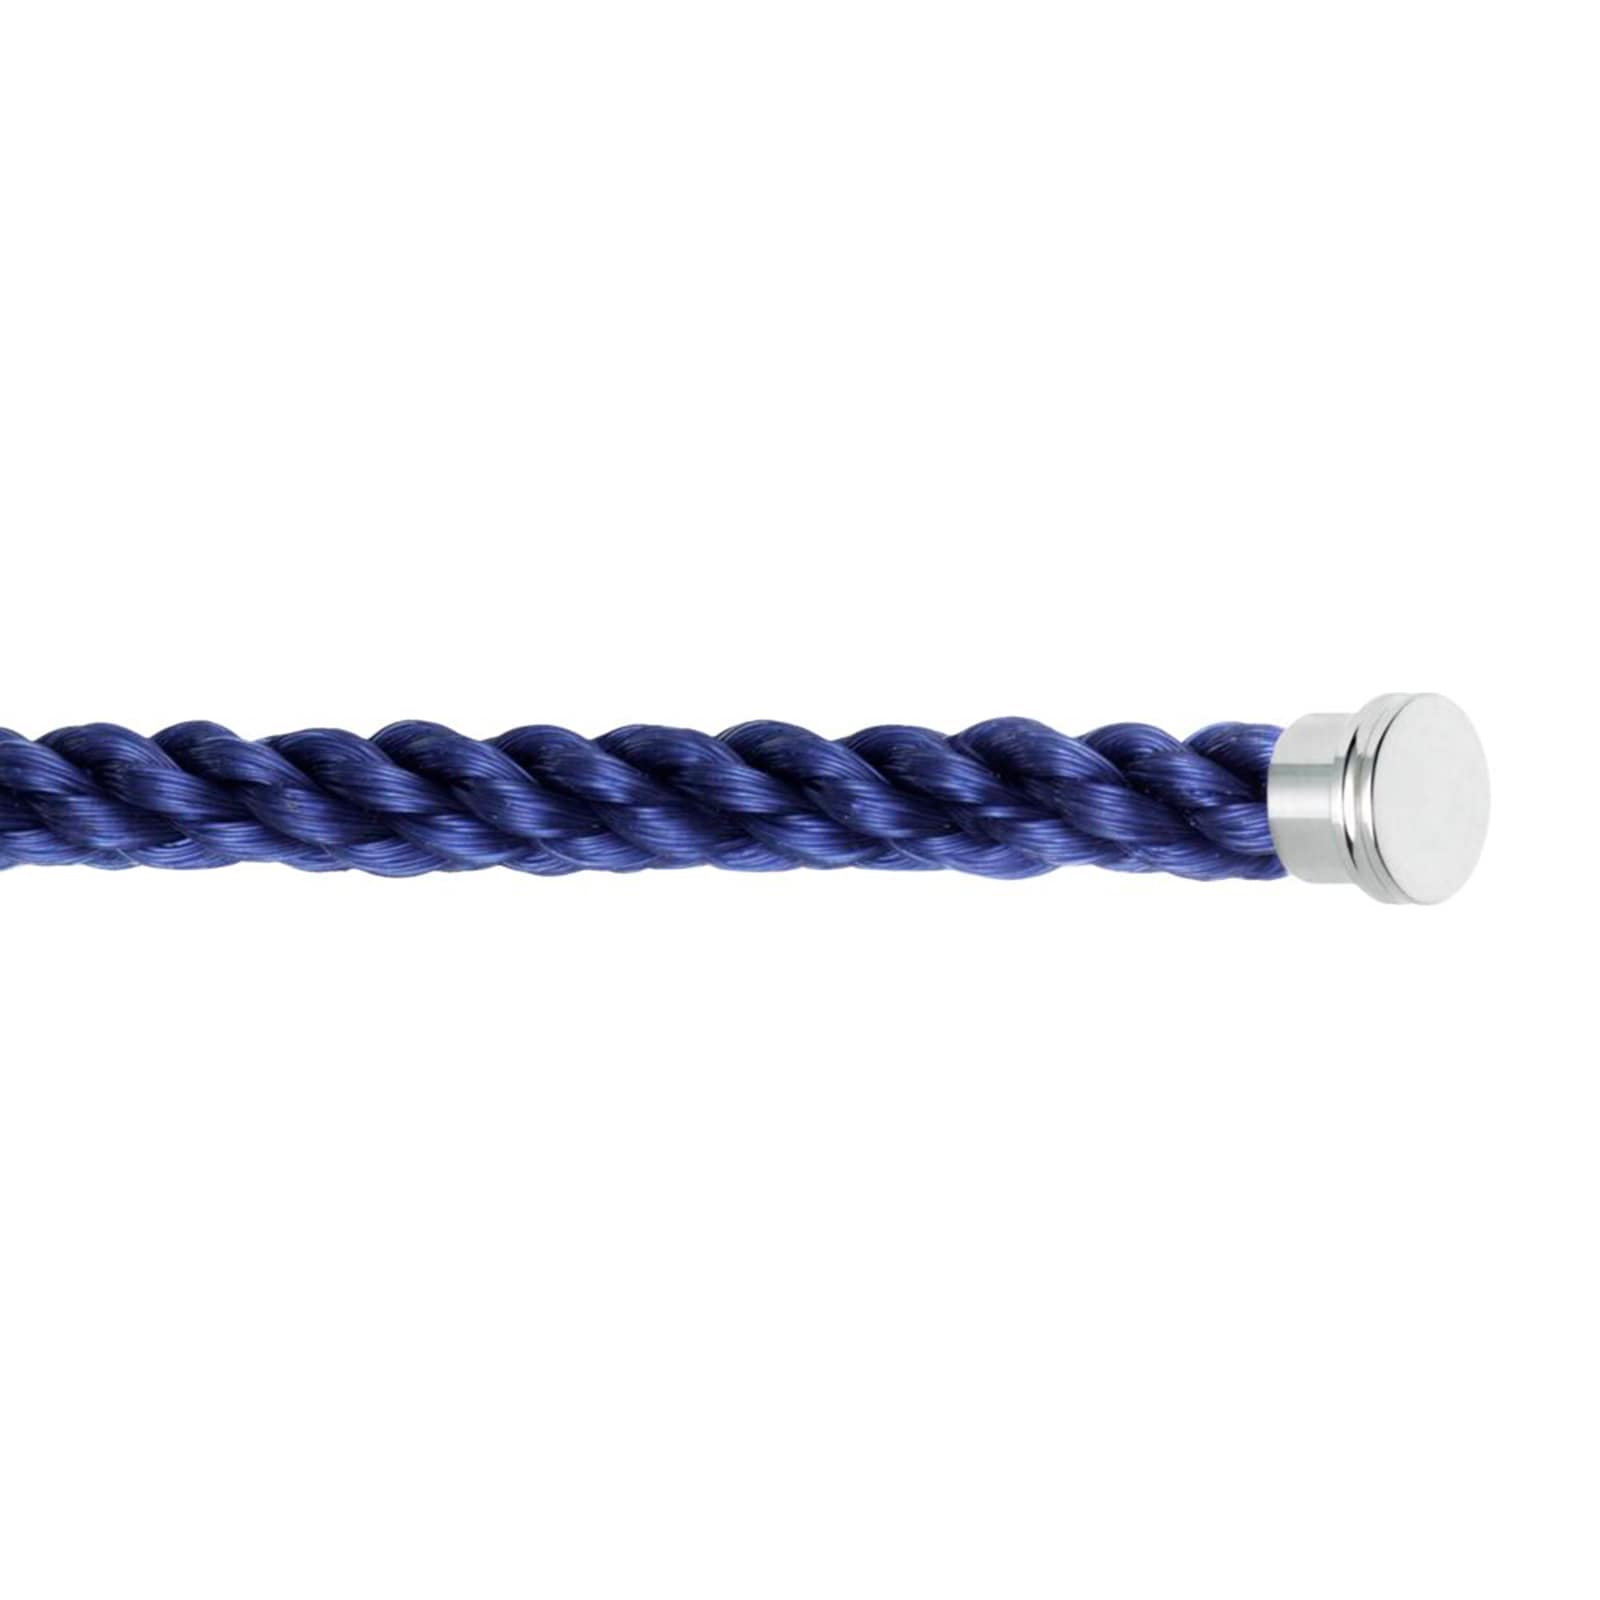 Force 10 Indigo Blue Cable Large Model - Size 18